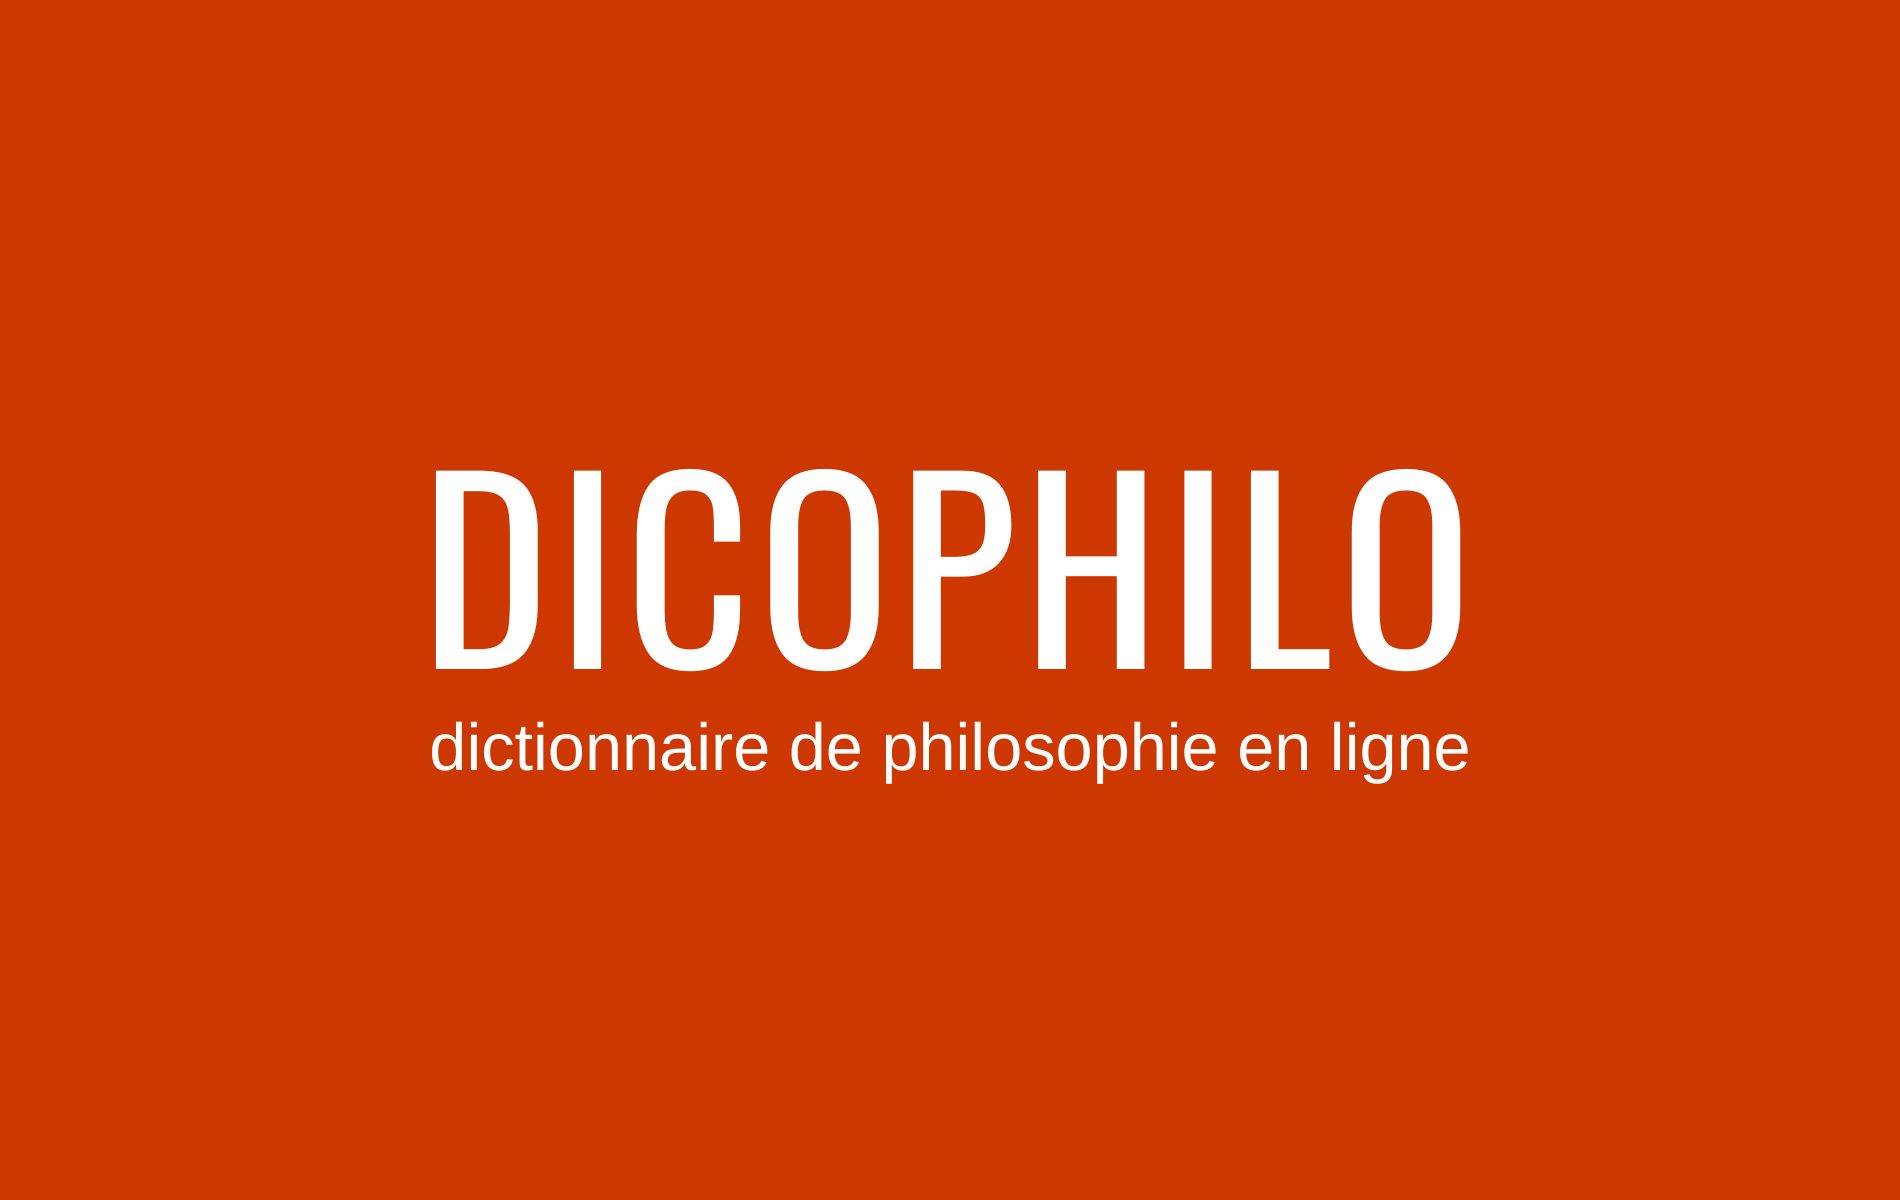 (c) Dicophilo.fr